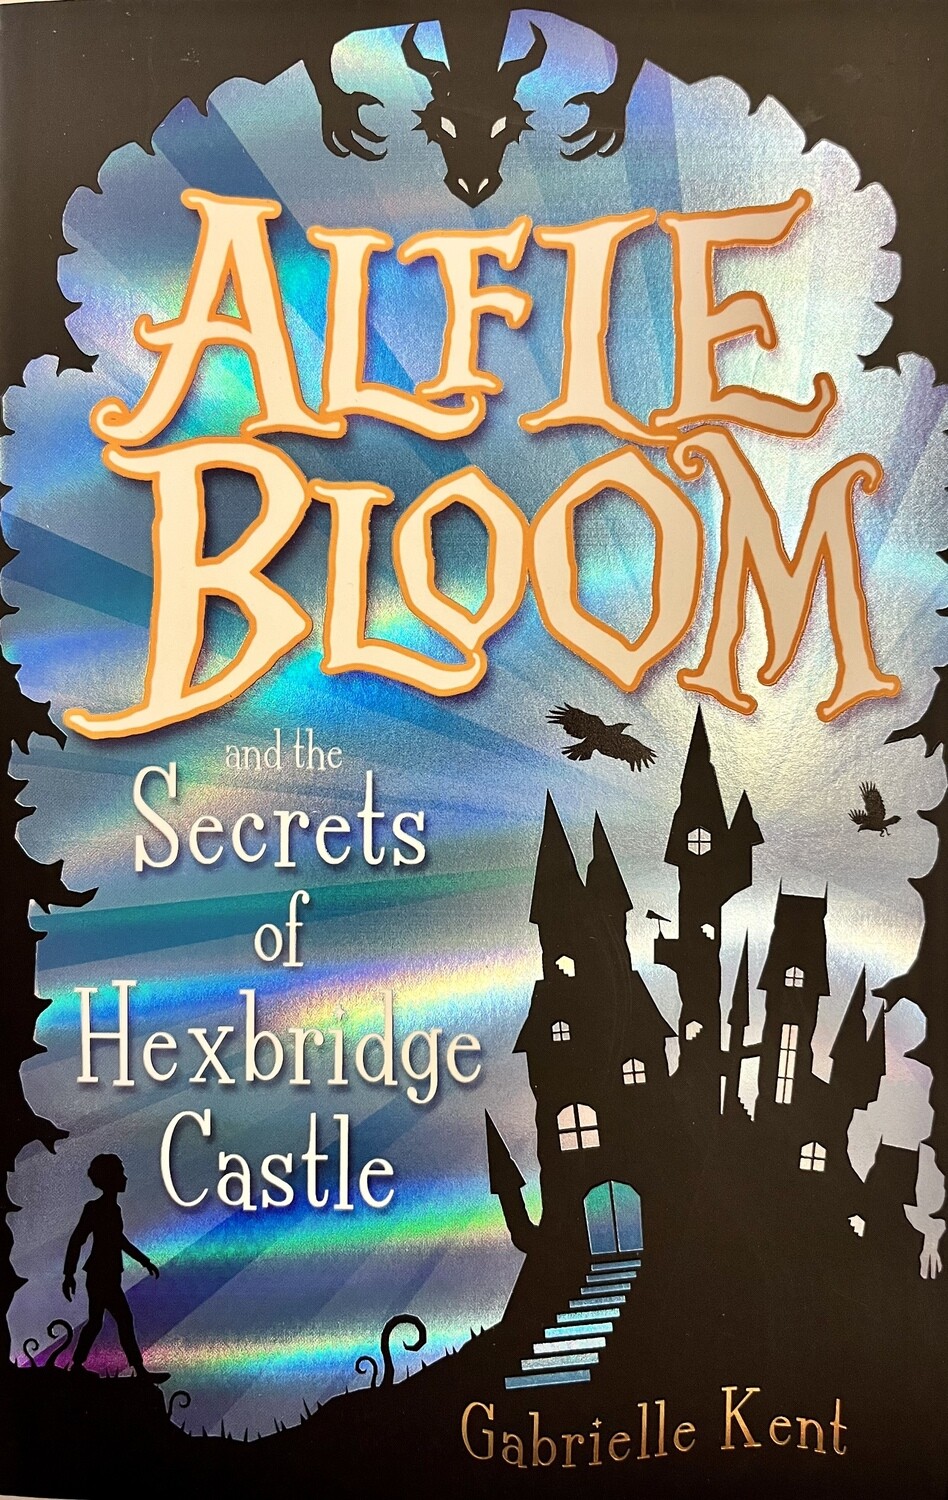 Alfie Bloom and the Secrets of Hexbridge Castle